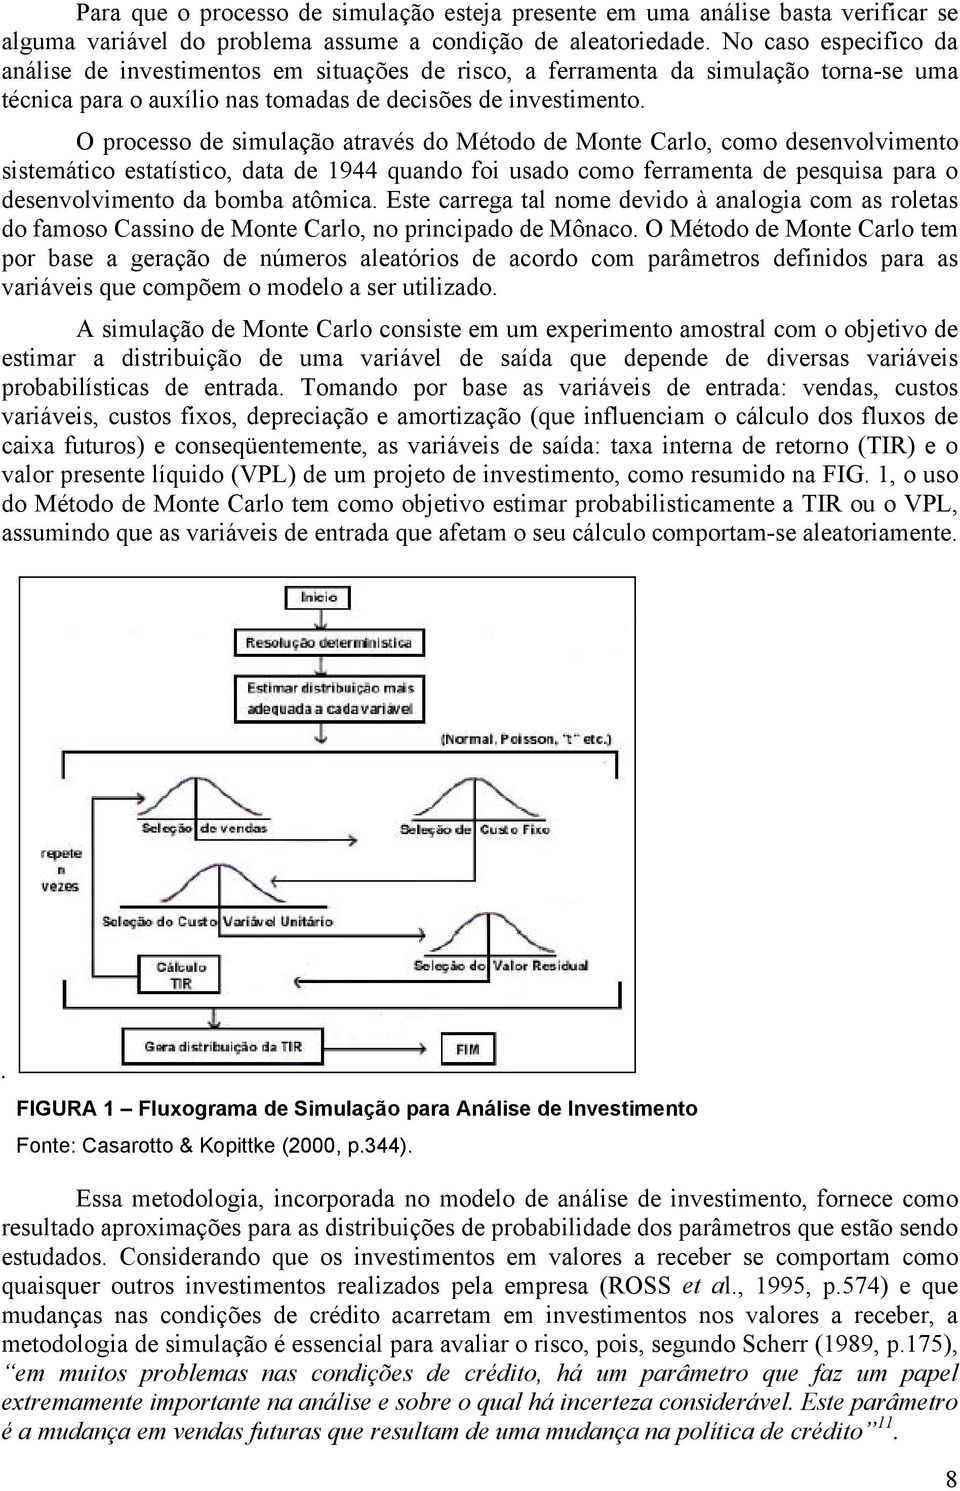 O processo de simulação através do Método de Monte Carlo, como desenvolvimento sistemático estatístico, data de 1944 quando foi usado como ferramenta de pesquisa para o desenvolvimento da bomba